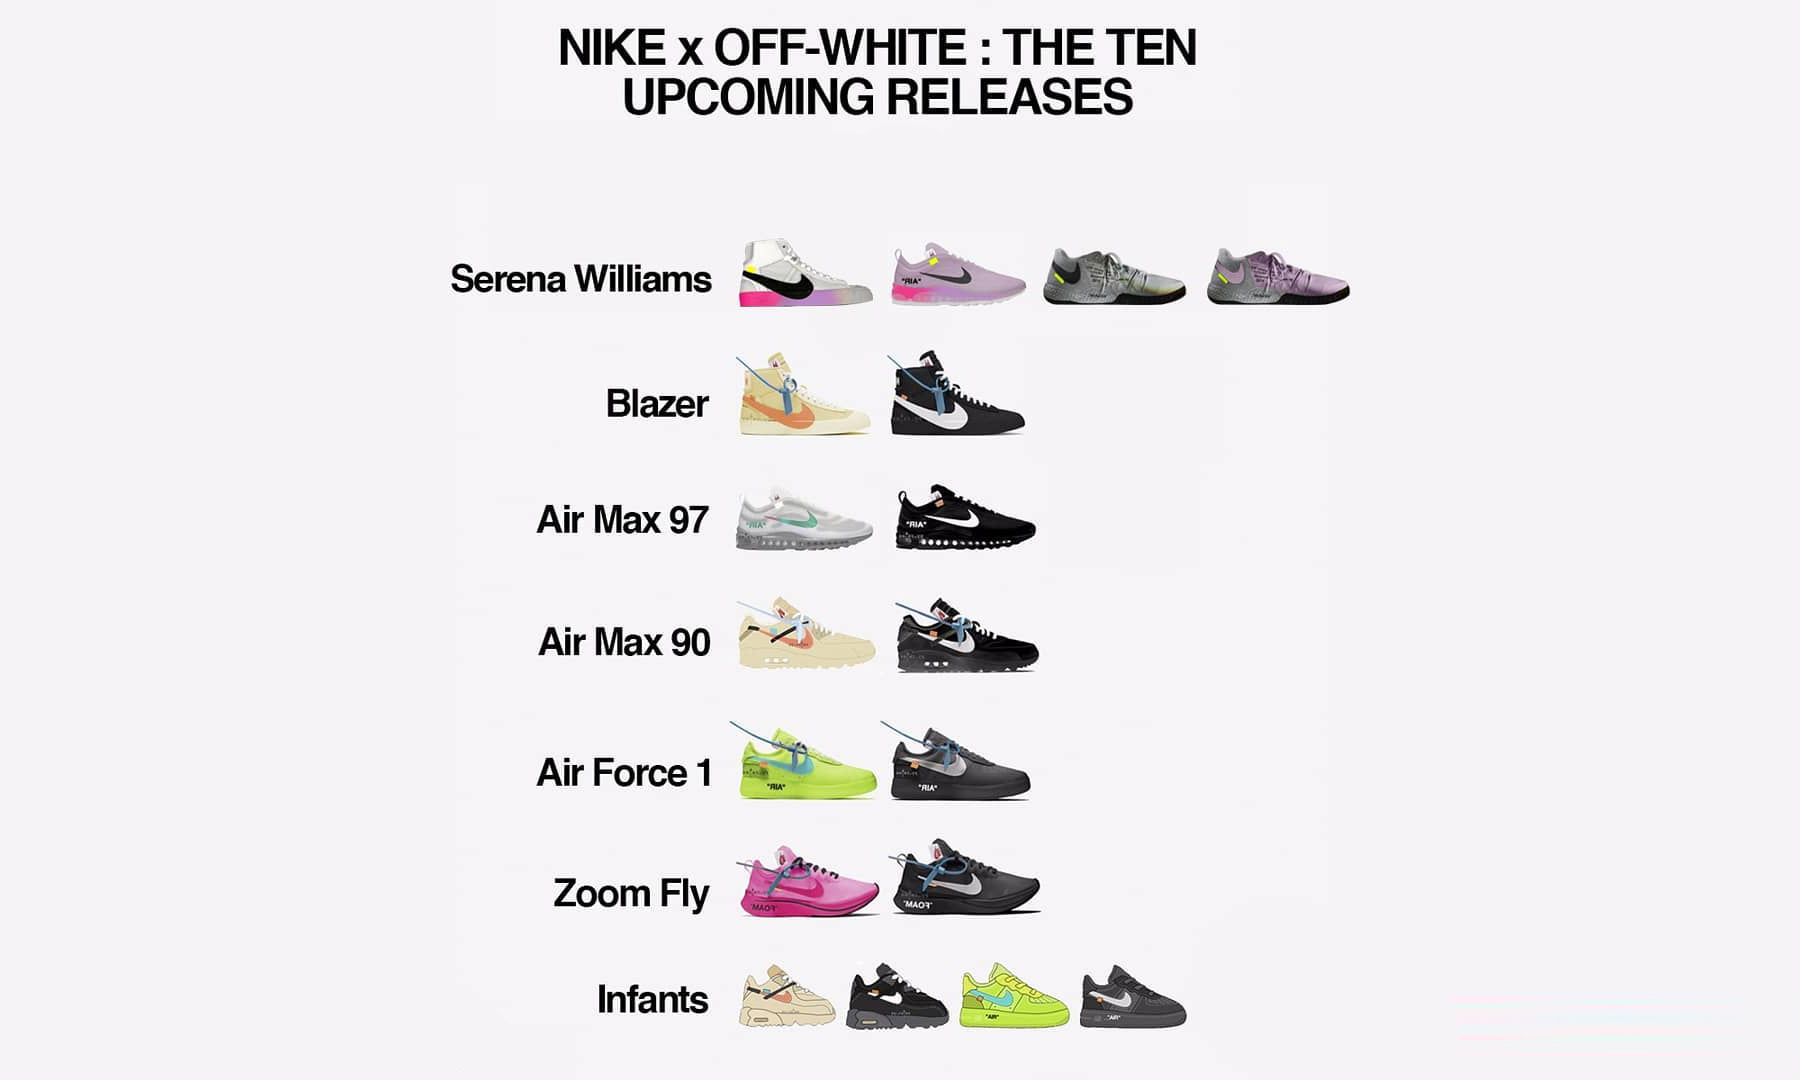 Nike air max 97 off white menta deadstock UK 10 Depop